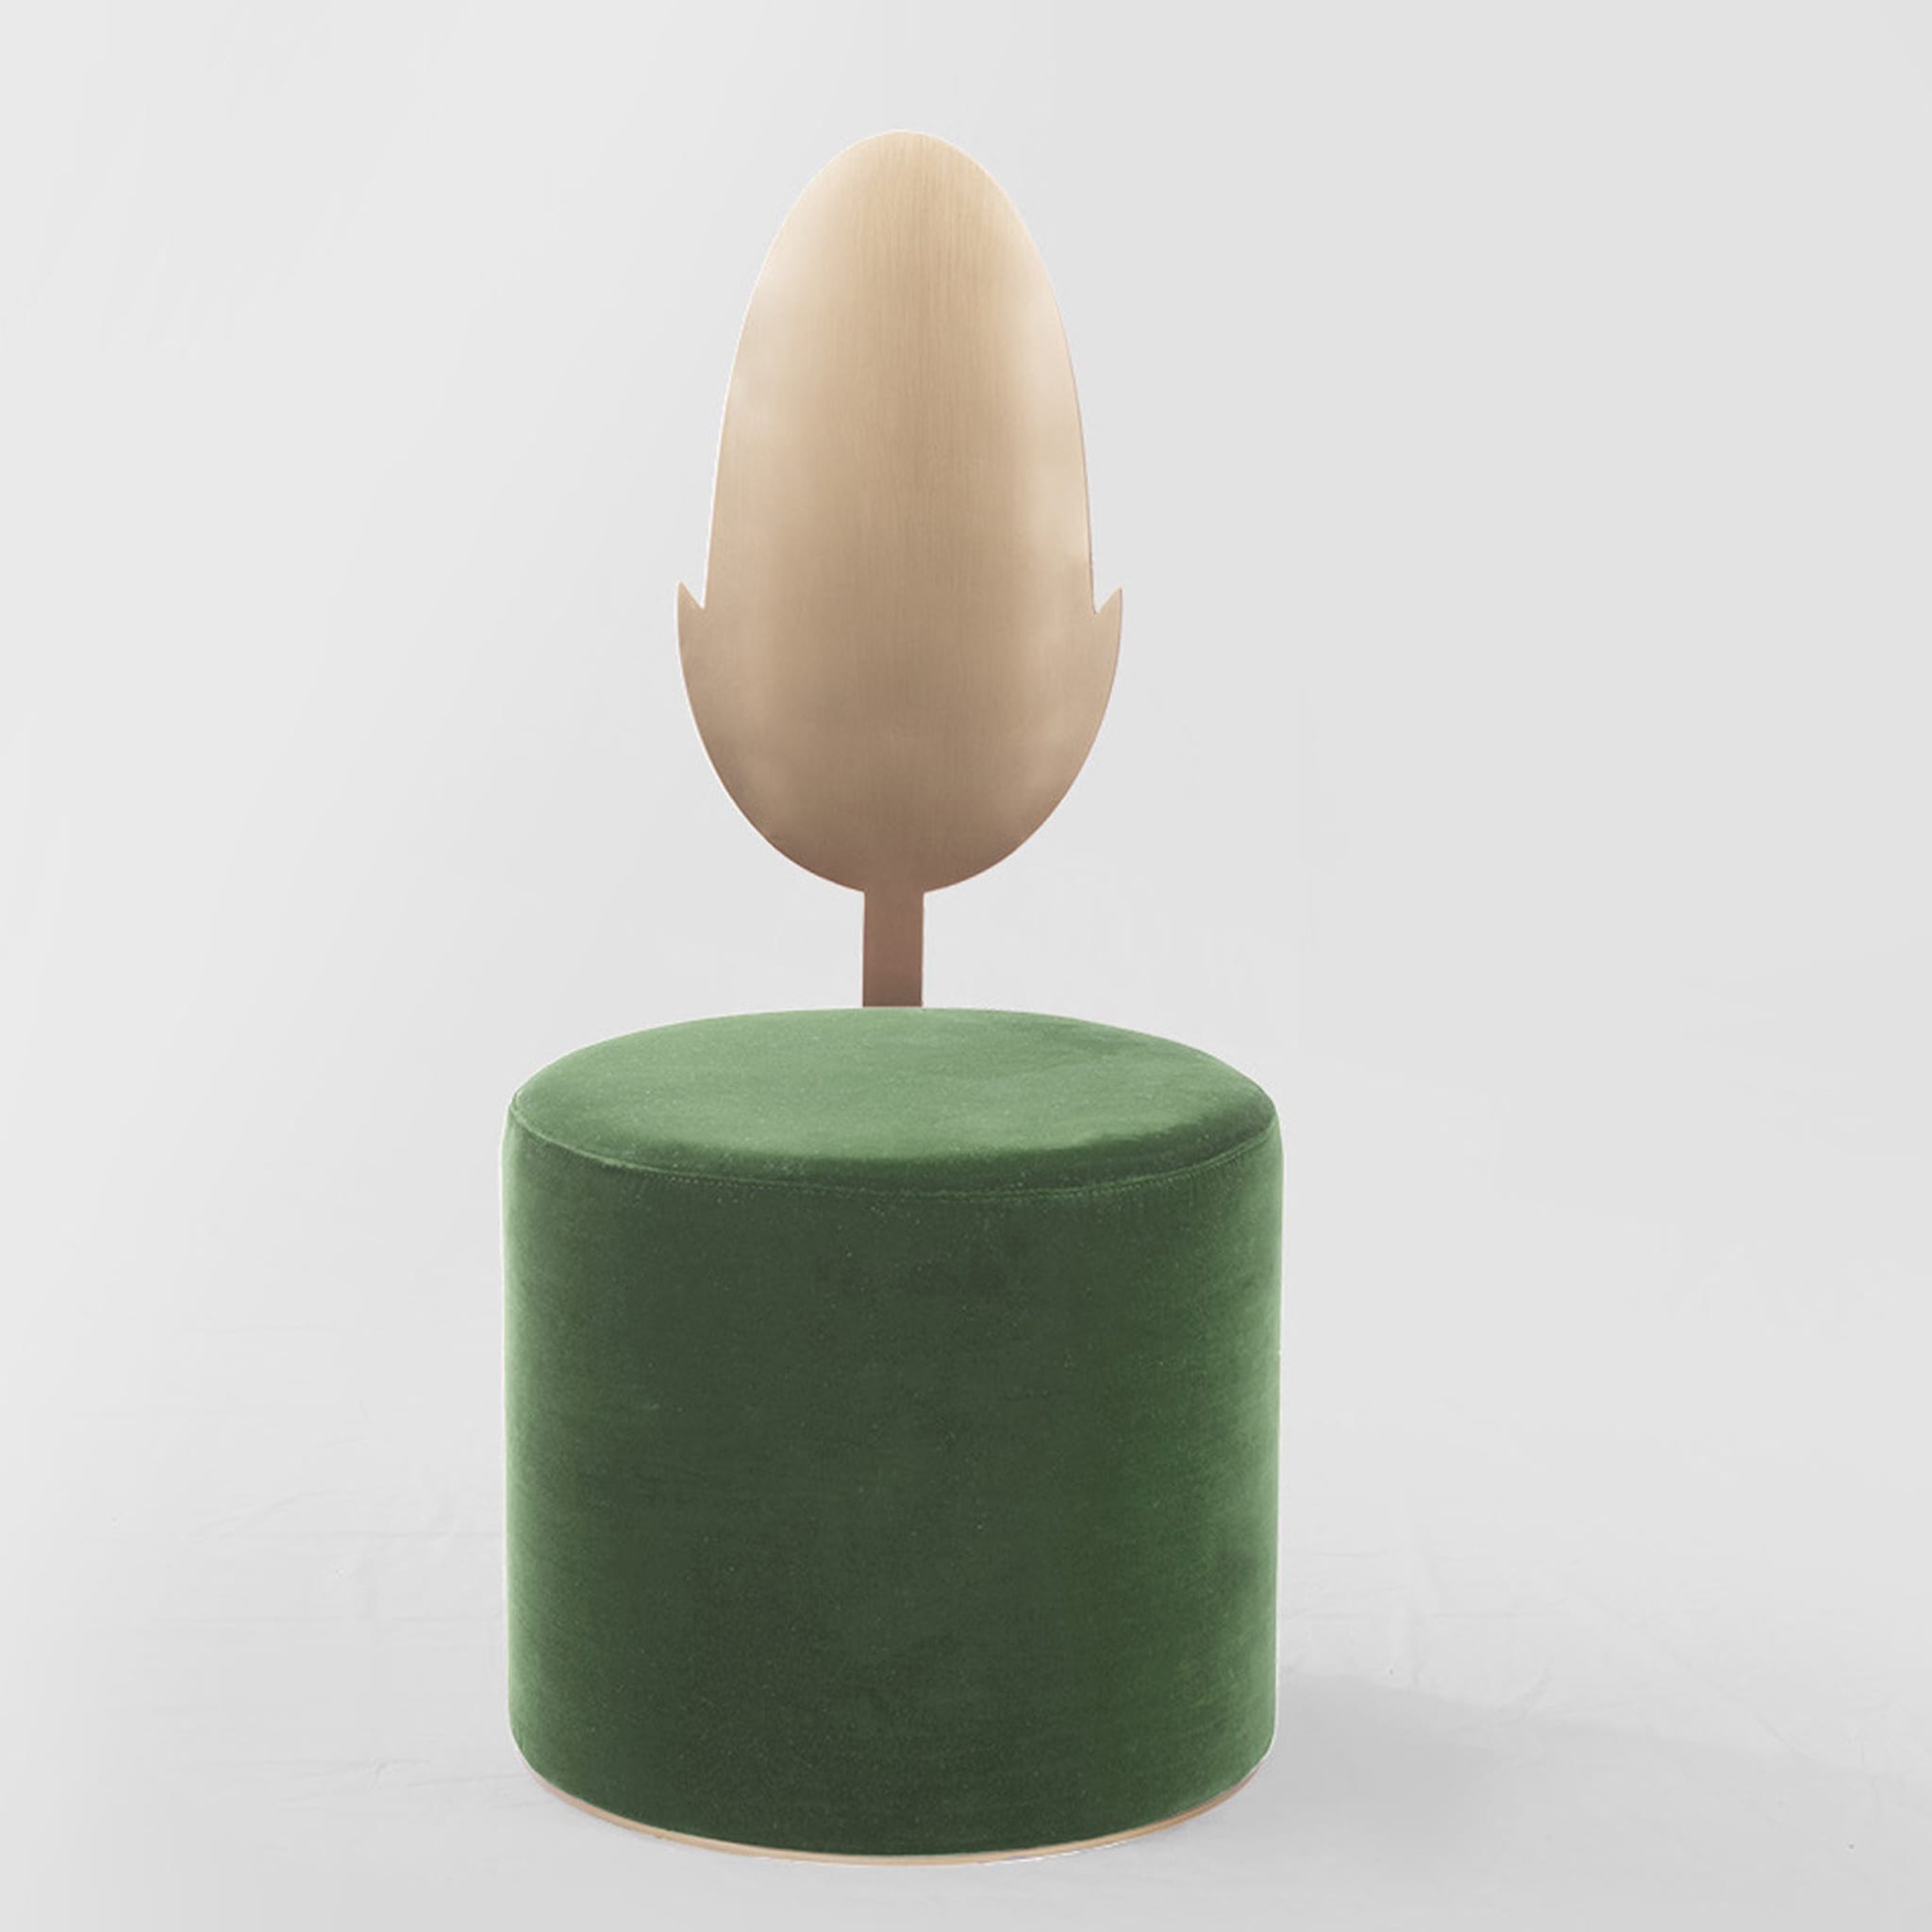 Jasmine Green Pouf by Artefatto Design Studio - Alternative view 1